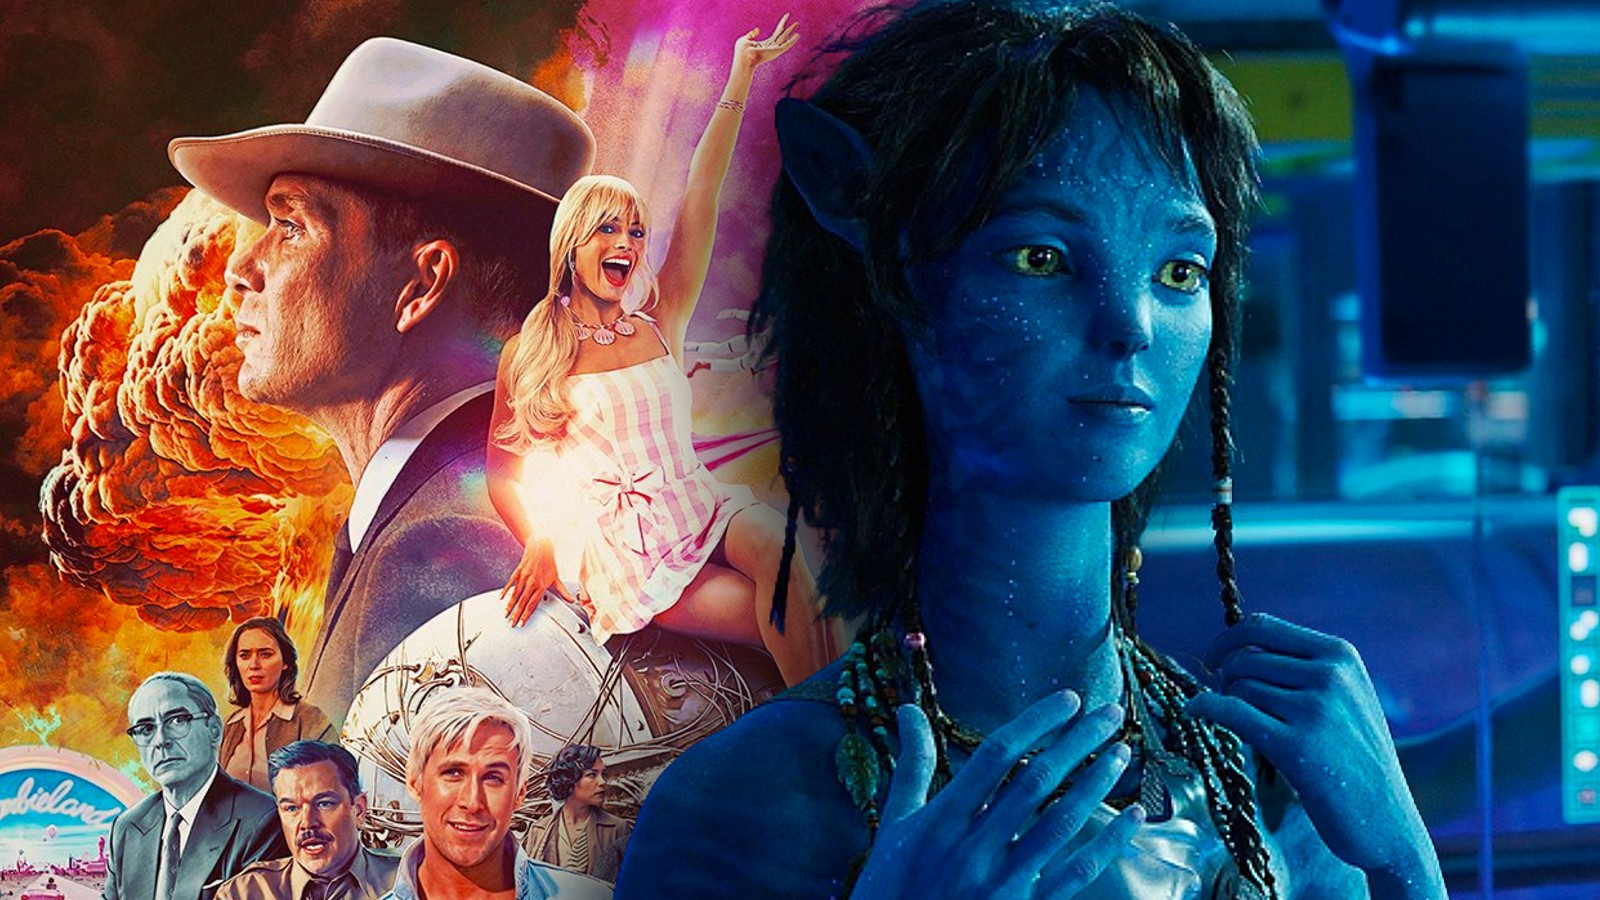 Un poster pentru Barbenheimer (Barbie și Oppenheimer) și un Still From Avatar 2, unul dintre cele mai mari filme din toate timpurile